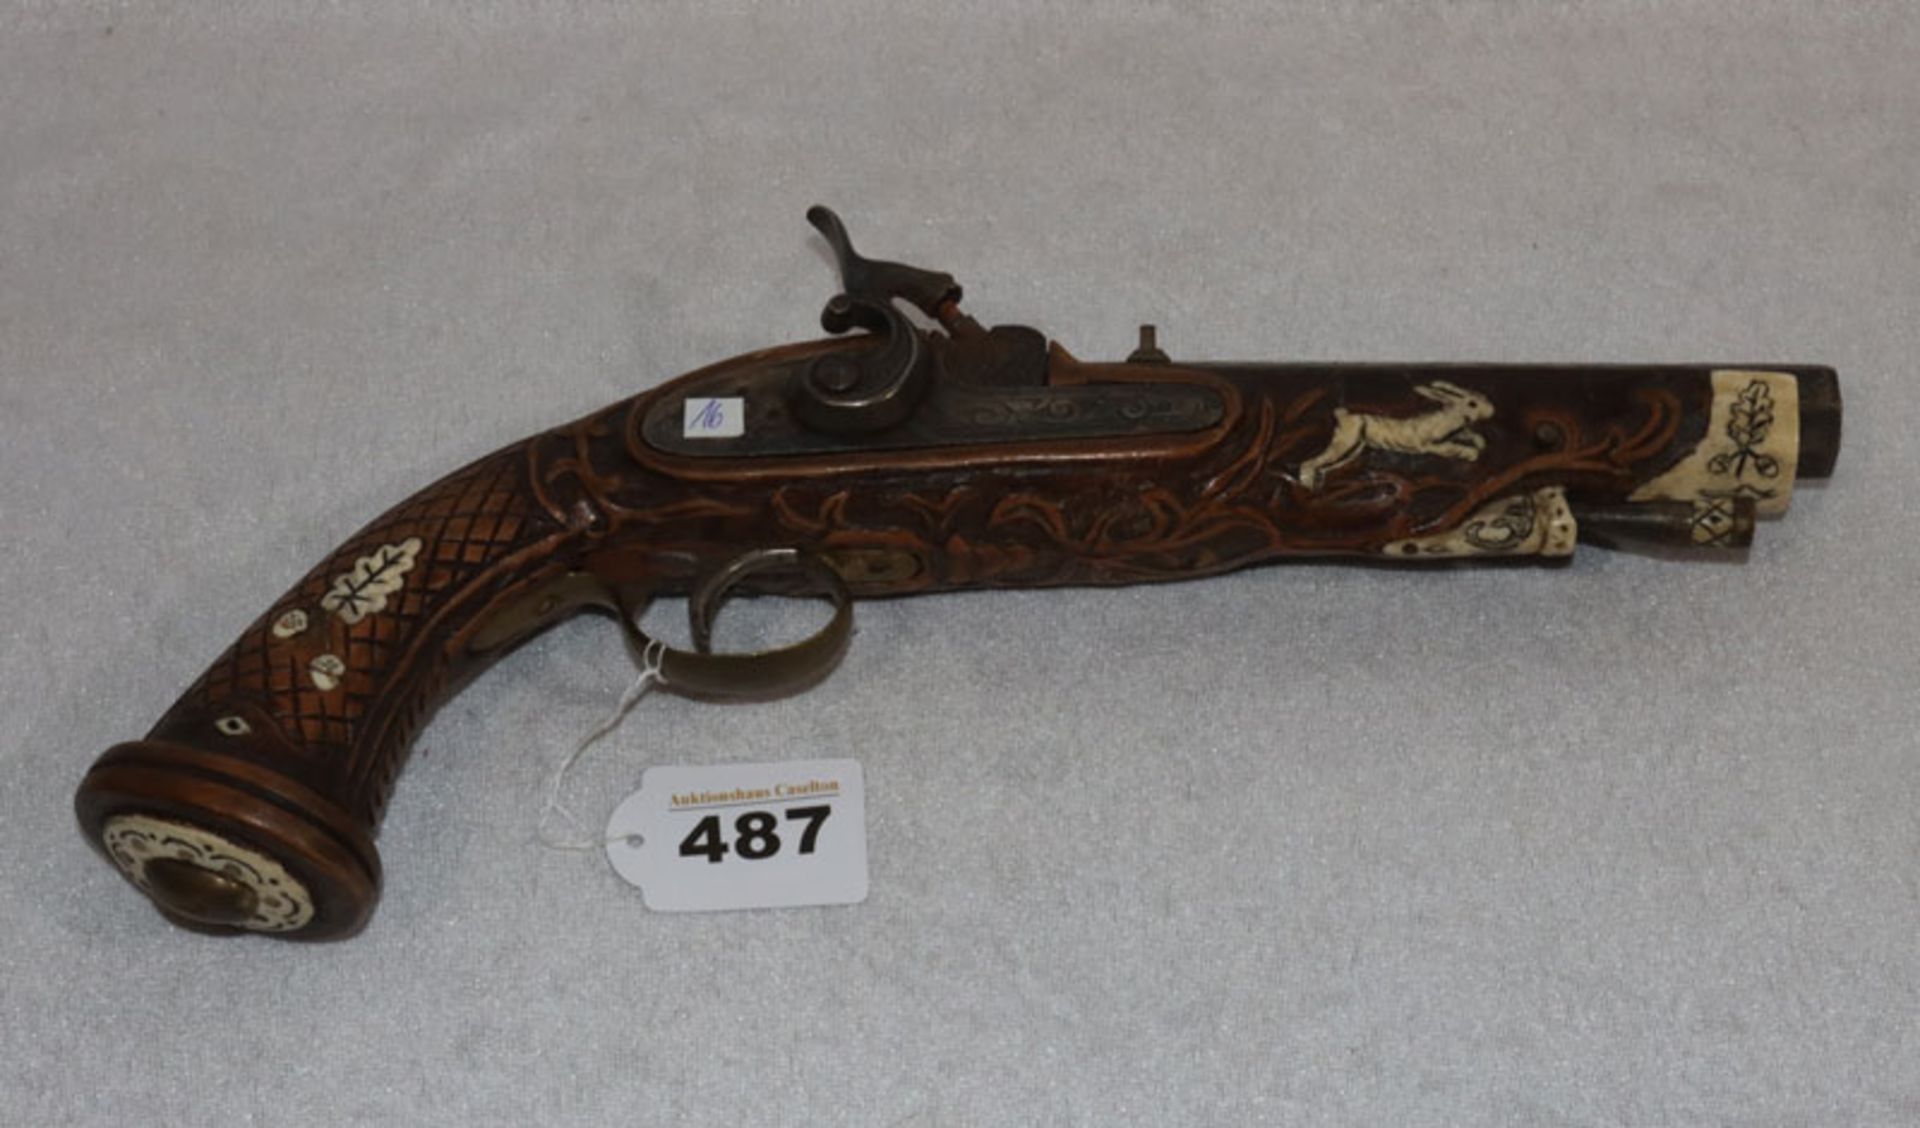 Replik einer Perkussionspistole, wohl Spanien, schön verziert, L 34 cm